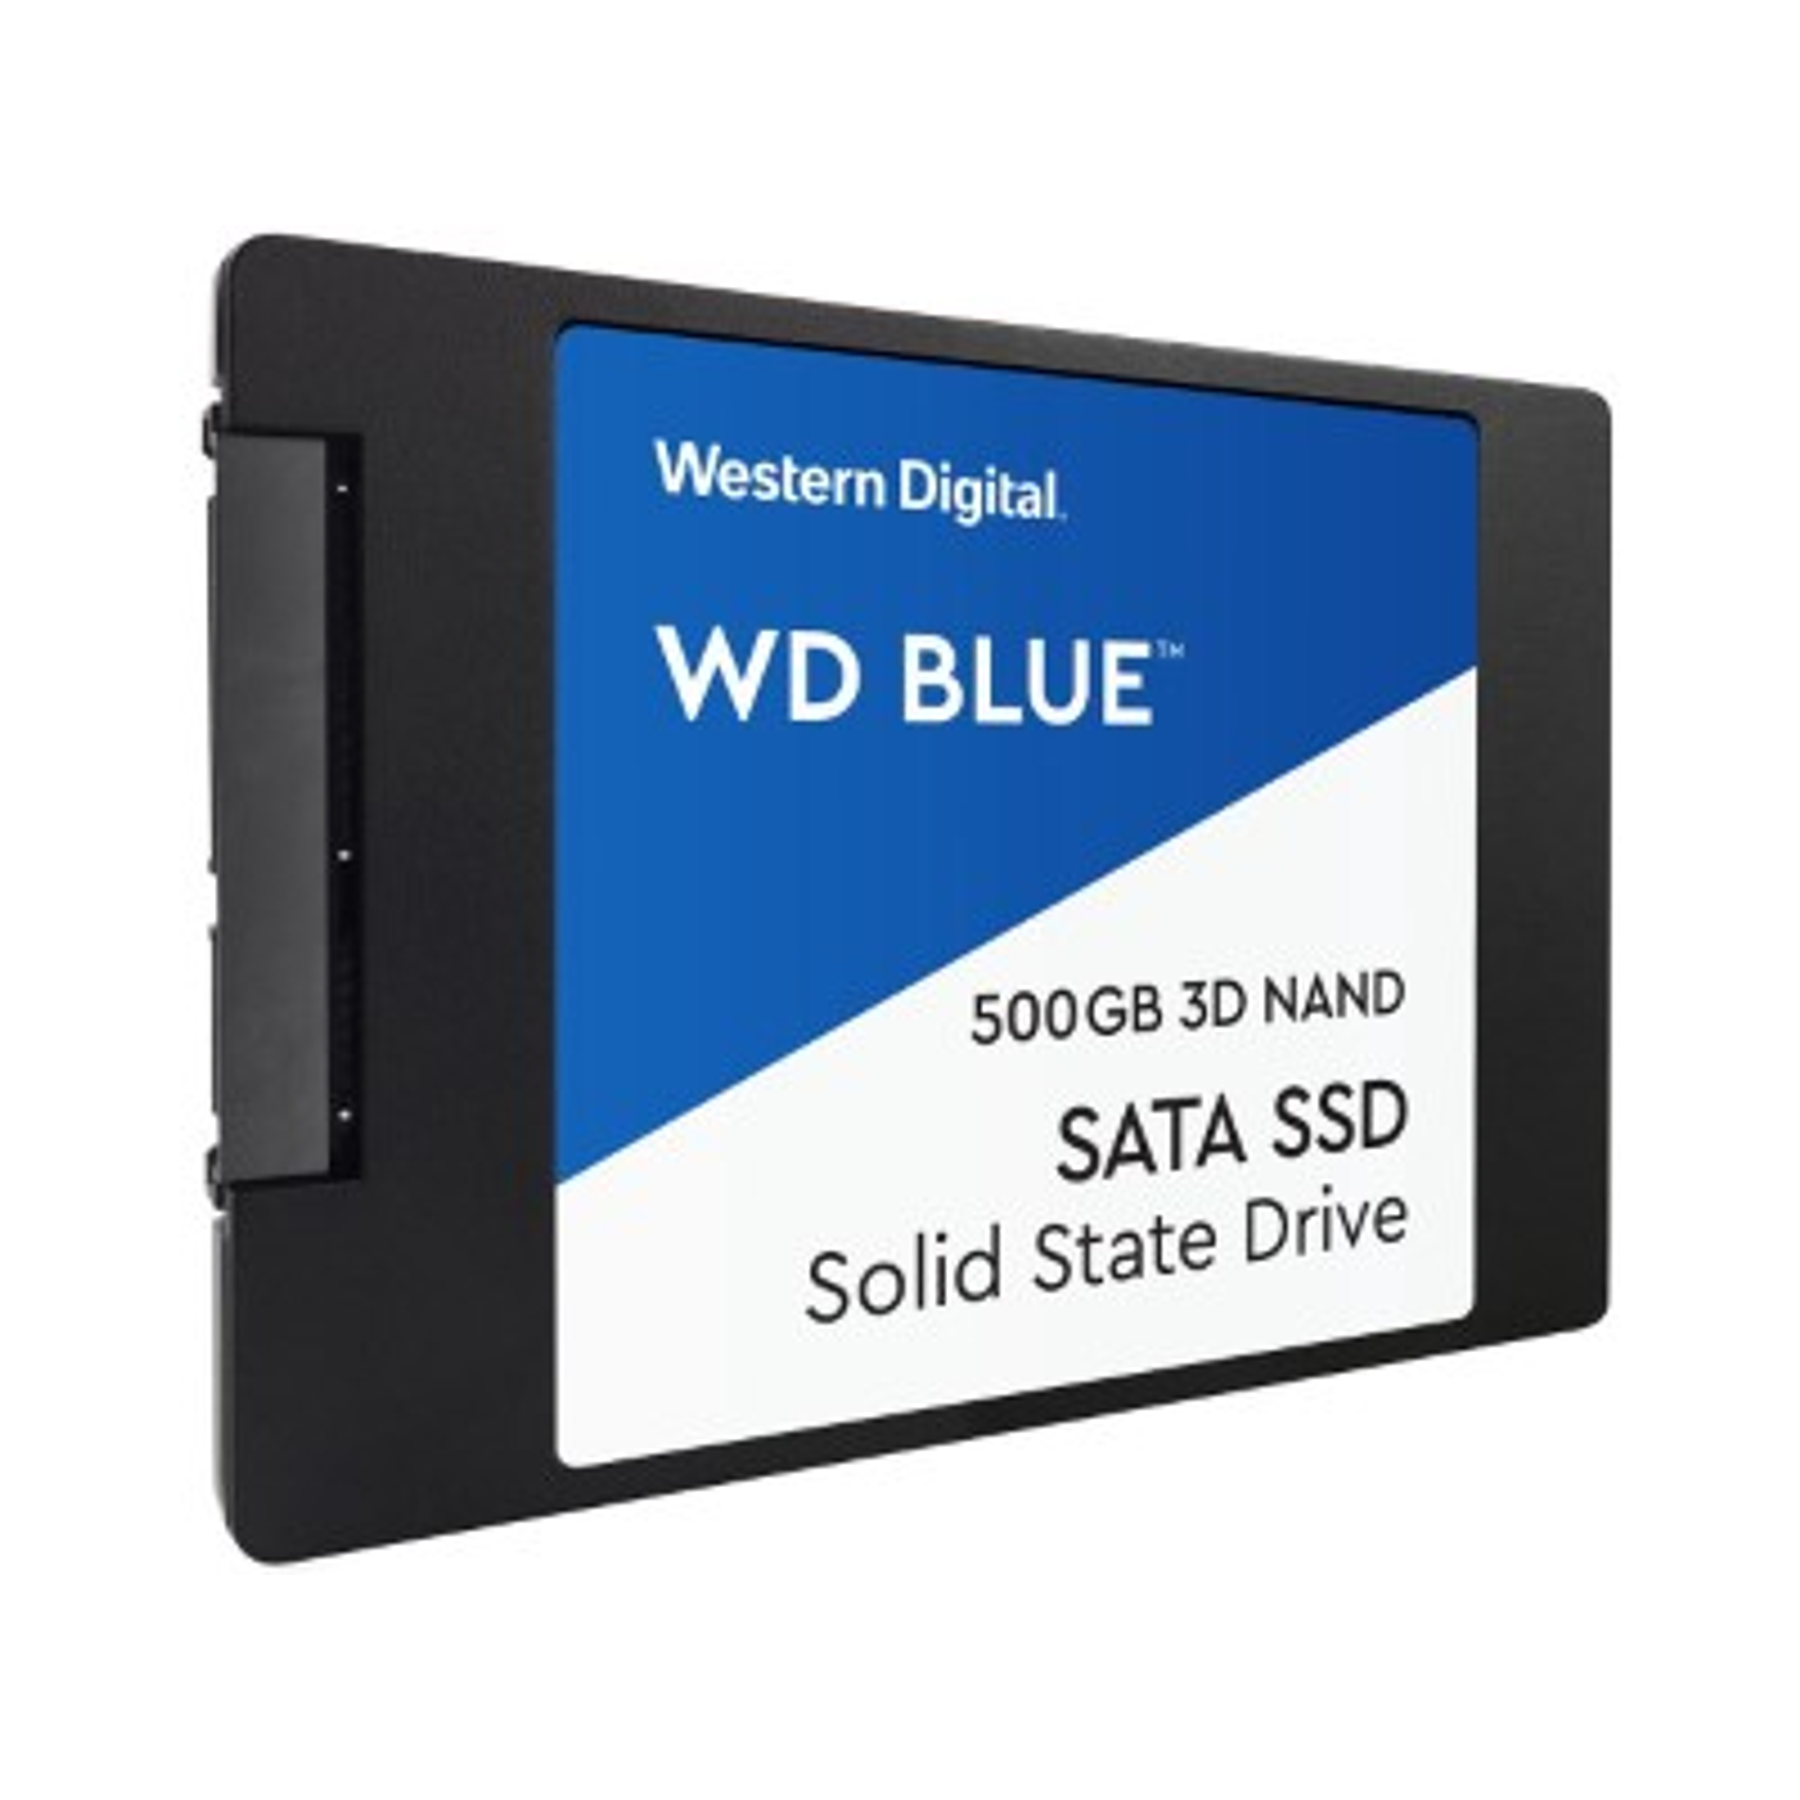 Western Digital SA510 Blue Disco Interno SSD 500GB